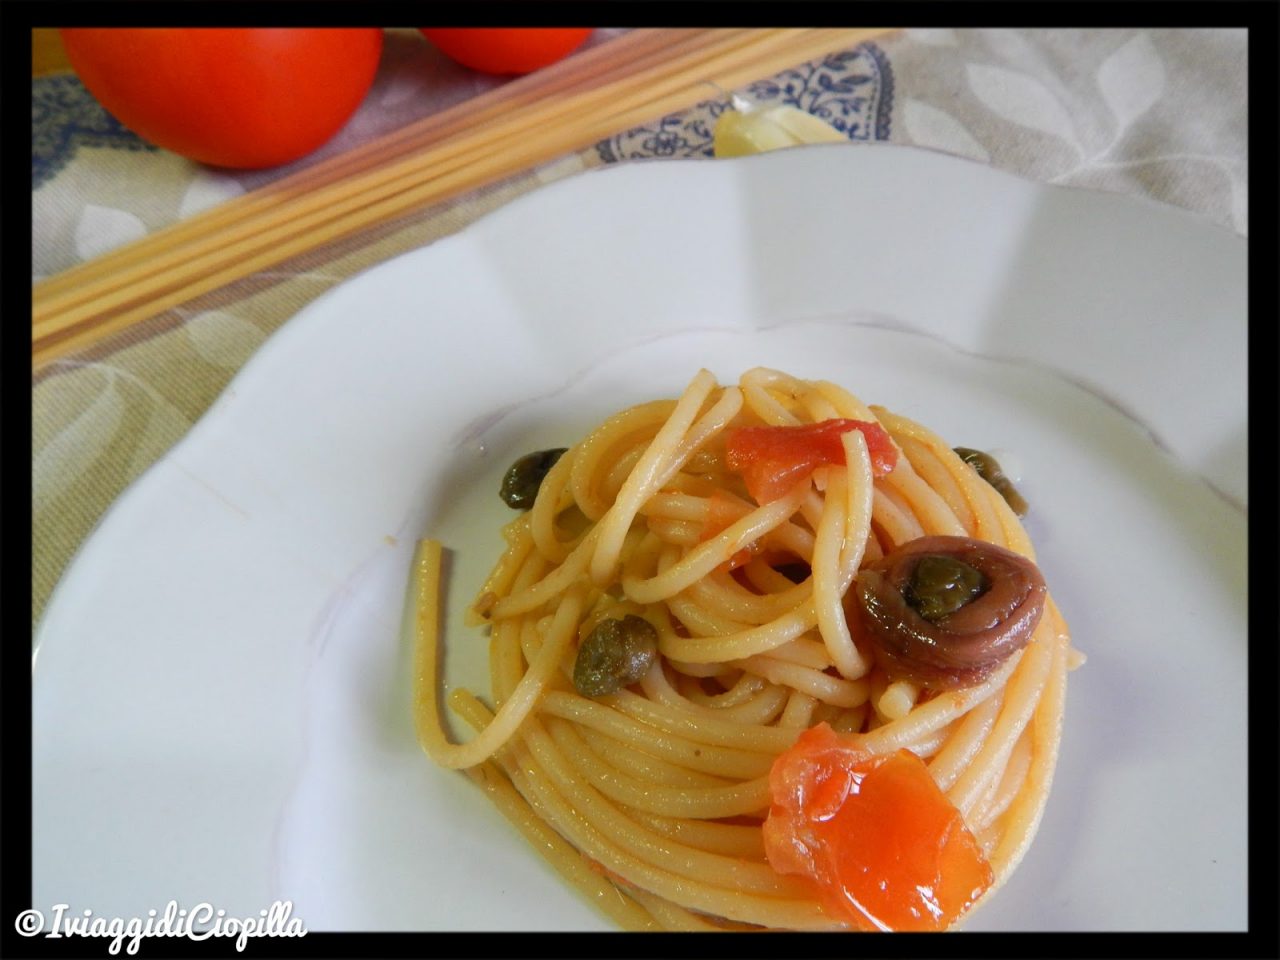 Spaghetti alla chitarra con pomodoro al sapore di alici, capperi e olive